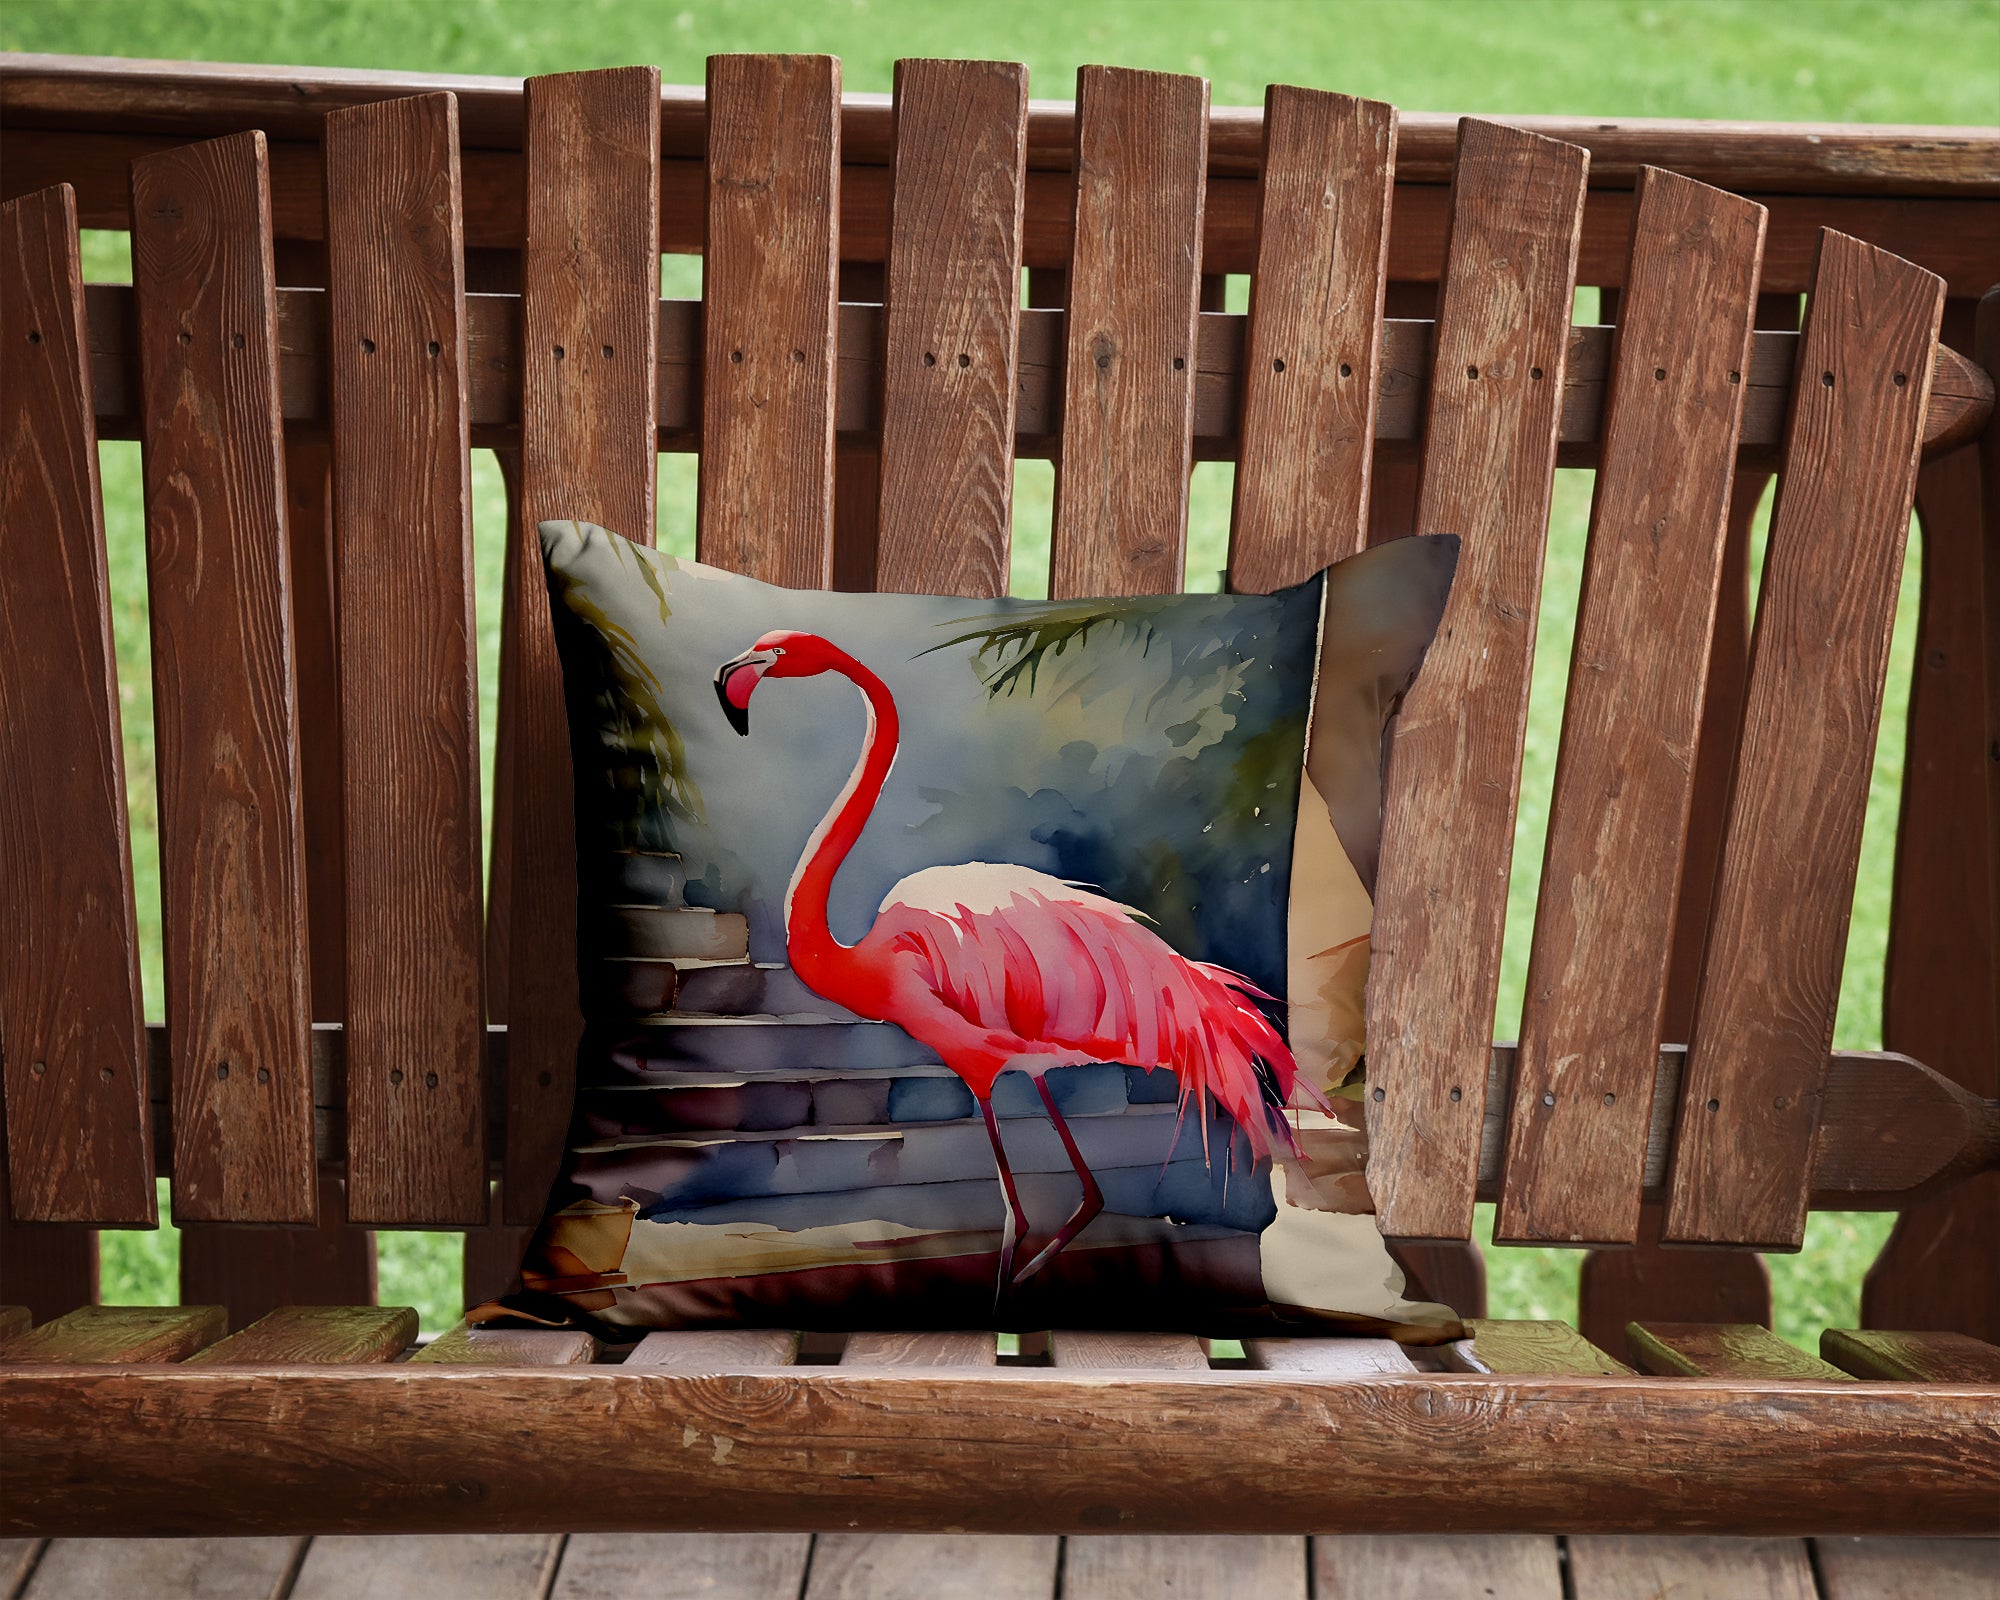 Buy this Flamingo Throw Pillow